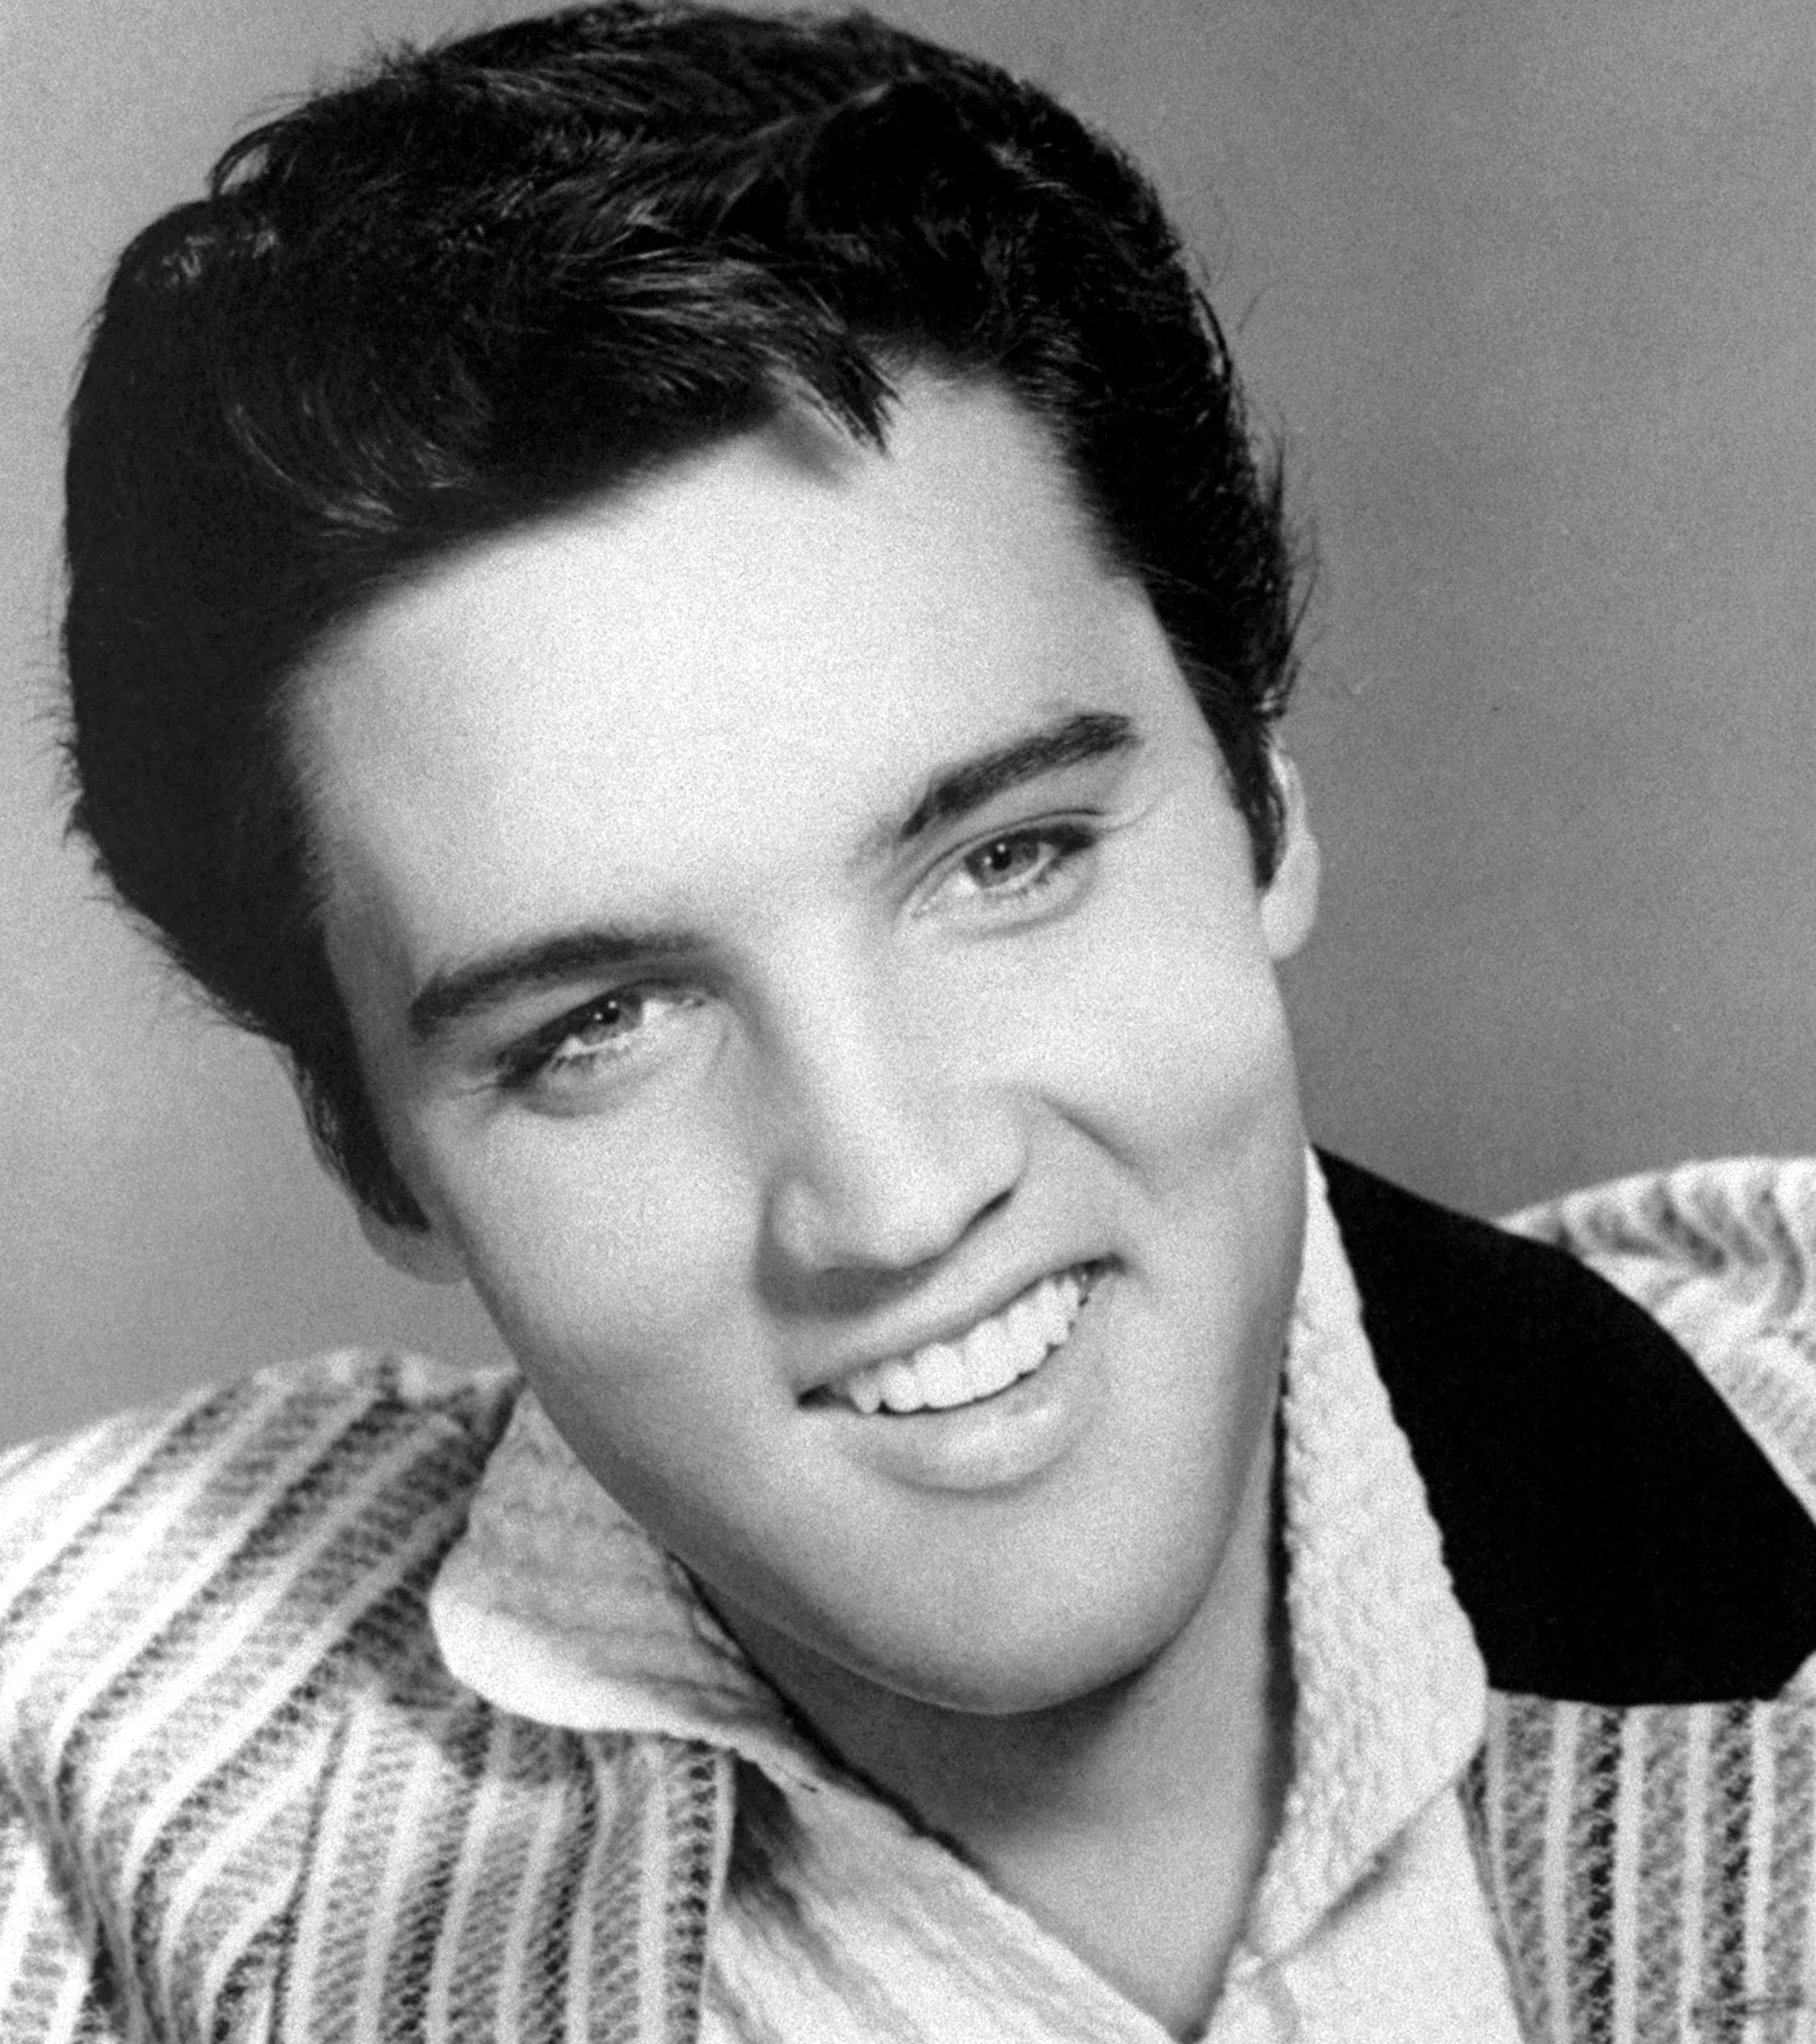 Elvis Presley earned $55 million